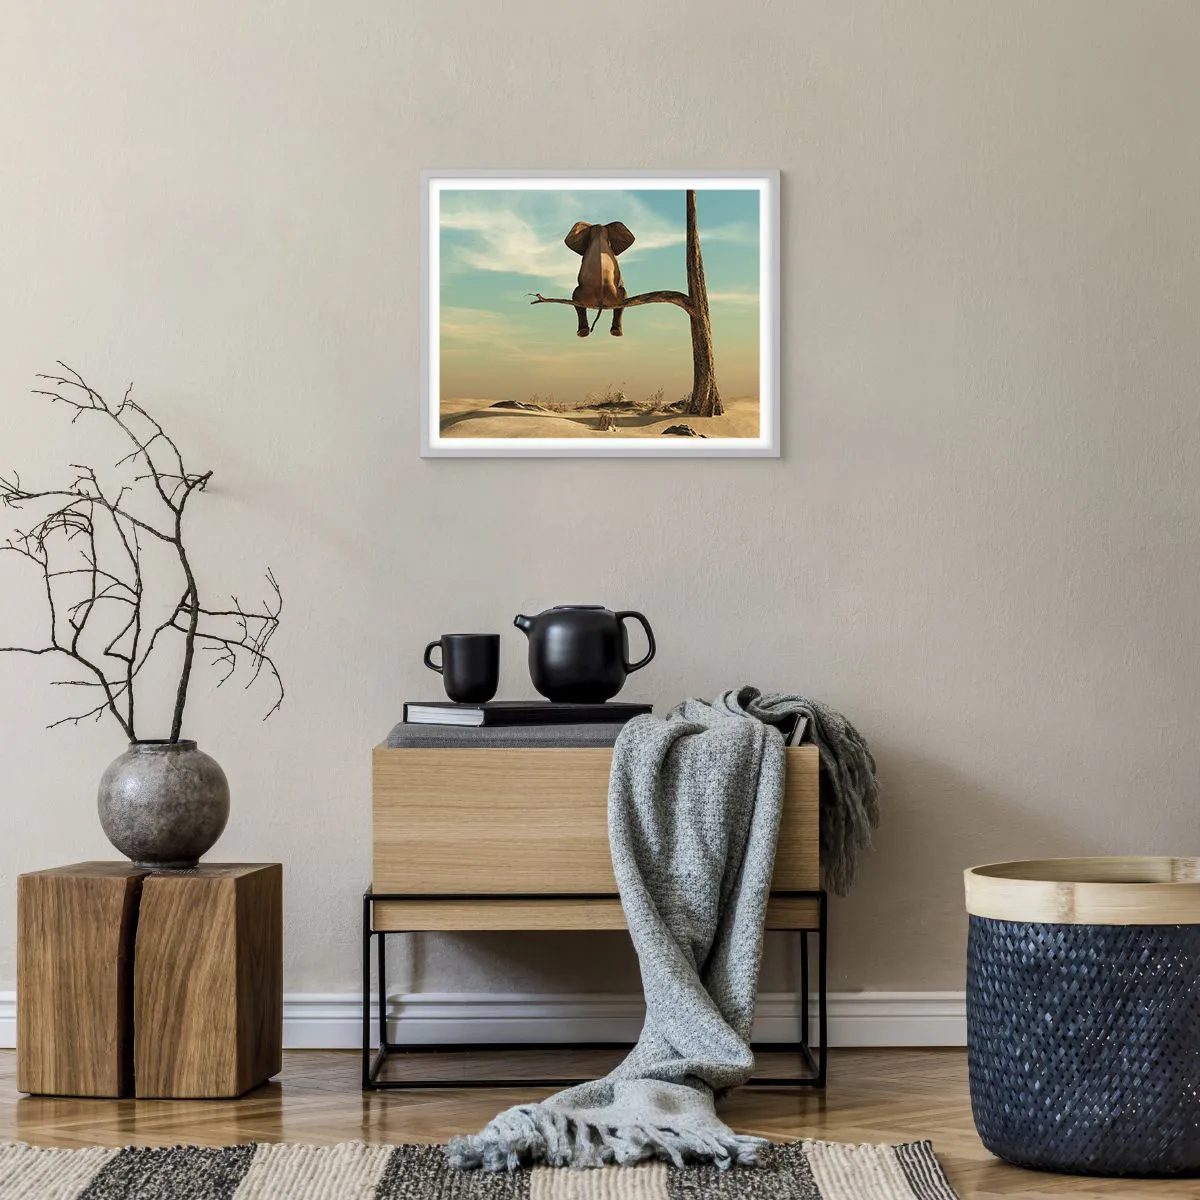 Póster en marco roble claro Arttor 100x70 cm - Un nuevo punto de vista -  Abstracción, Animales, Elefante, Desierto, África, Para el salón, Para el